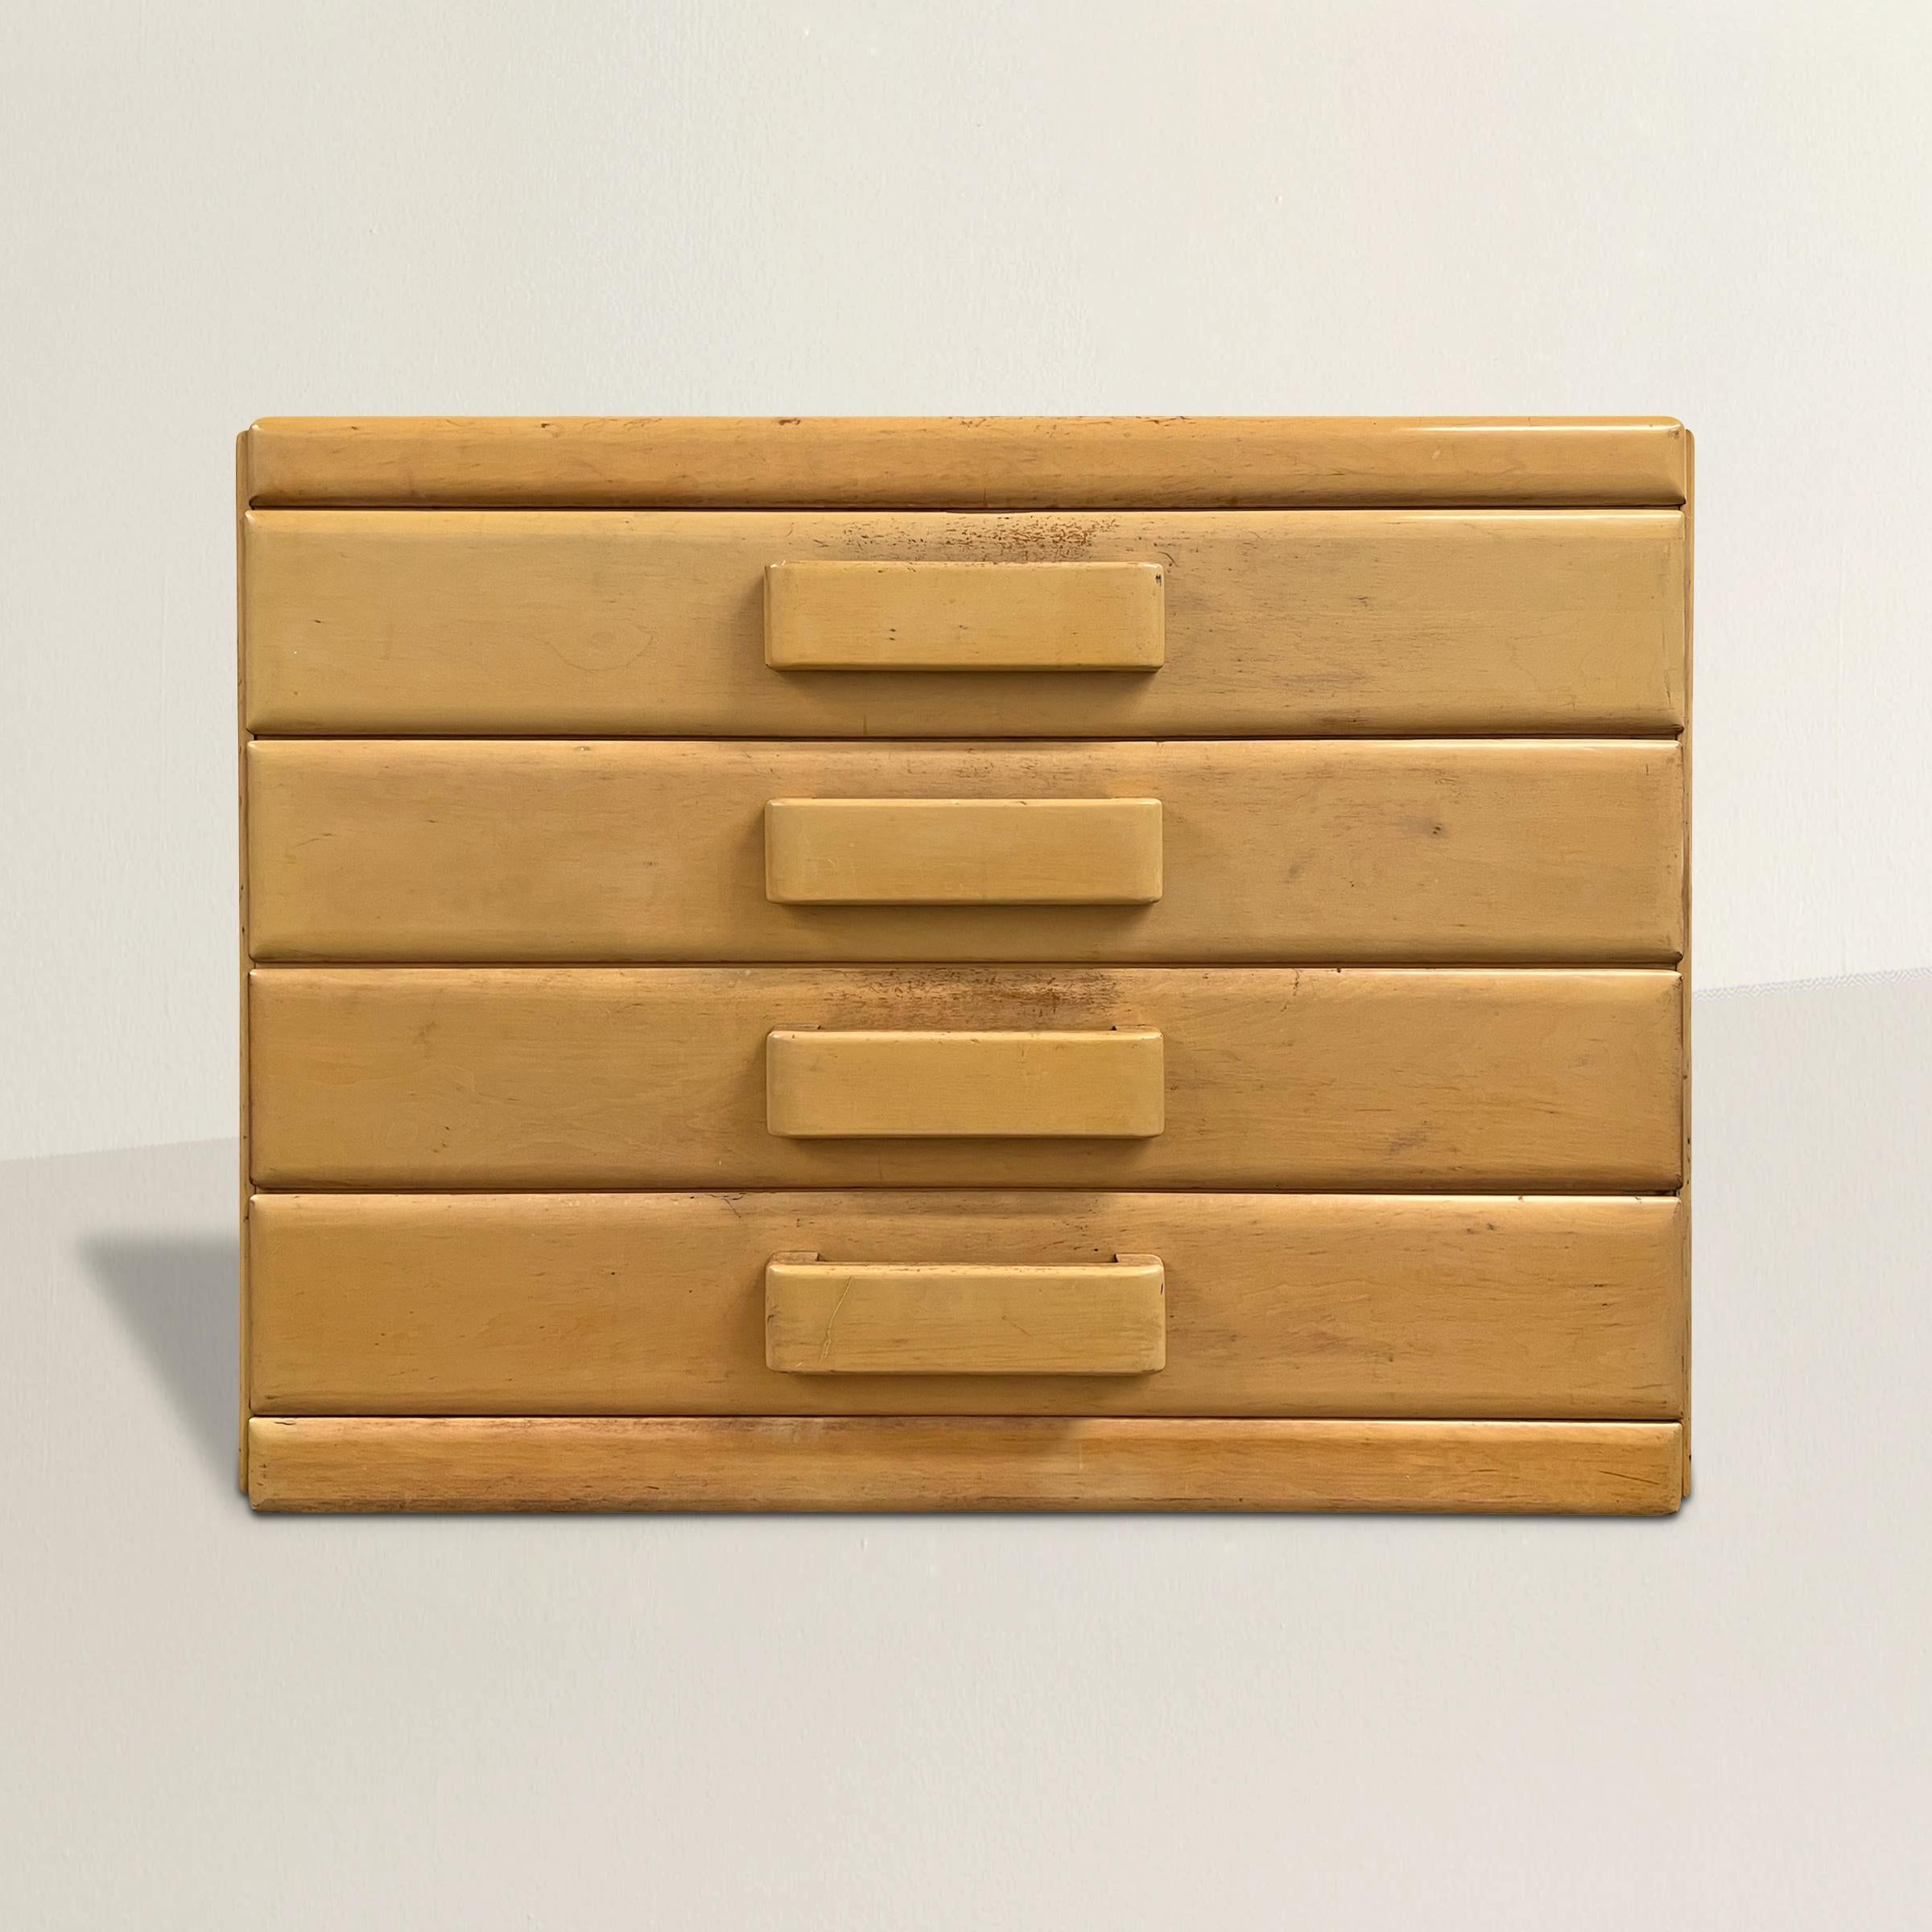 Eine schicke Kommode im amerikanischen Modernismus des frühen 20. Jahrhunderts mit vier Schubladen mit breiten Holzgriffen und einer schönen, zeitlosen elfenbeinfarbenen Lackierung, die sich nahtlos in zahlreiche Designstile einfügt. Ideal für Ihr